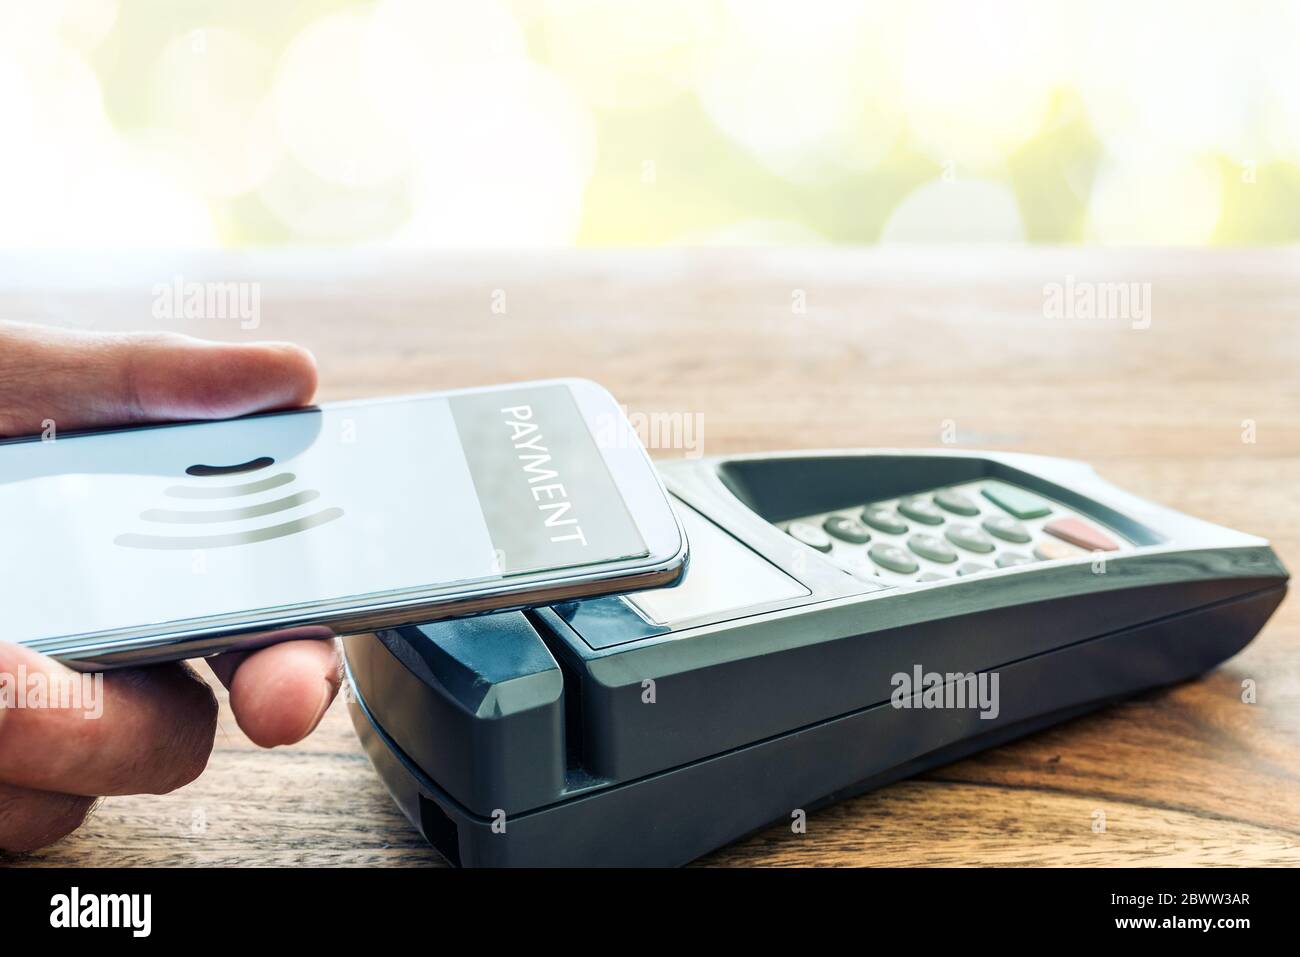 Kontaktloses Bezahlen mit Smartphone-Konzept, Person, die Telefon gegen POS-Zahlungsterminal hält Stockfoto